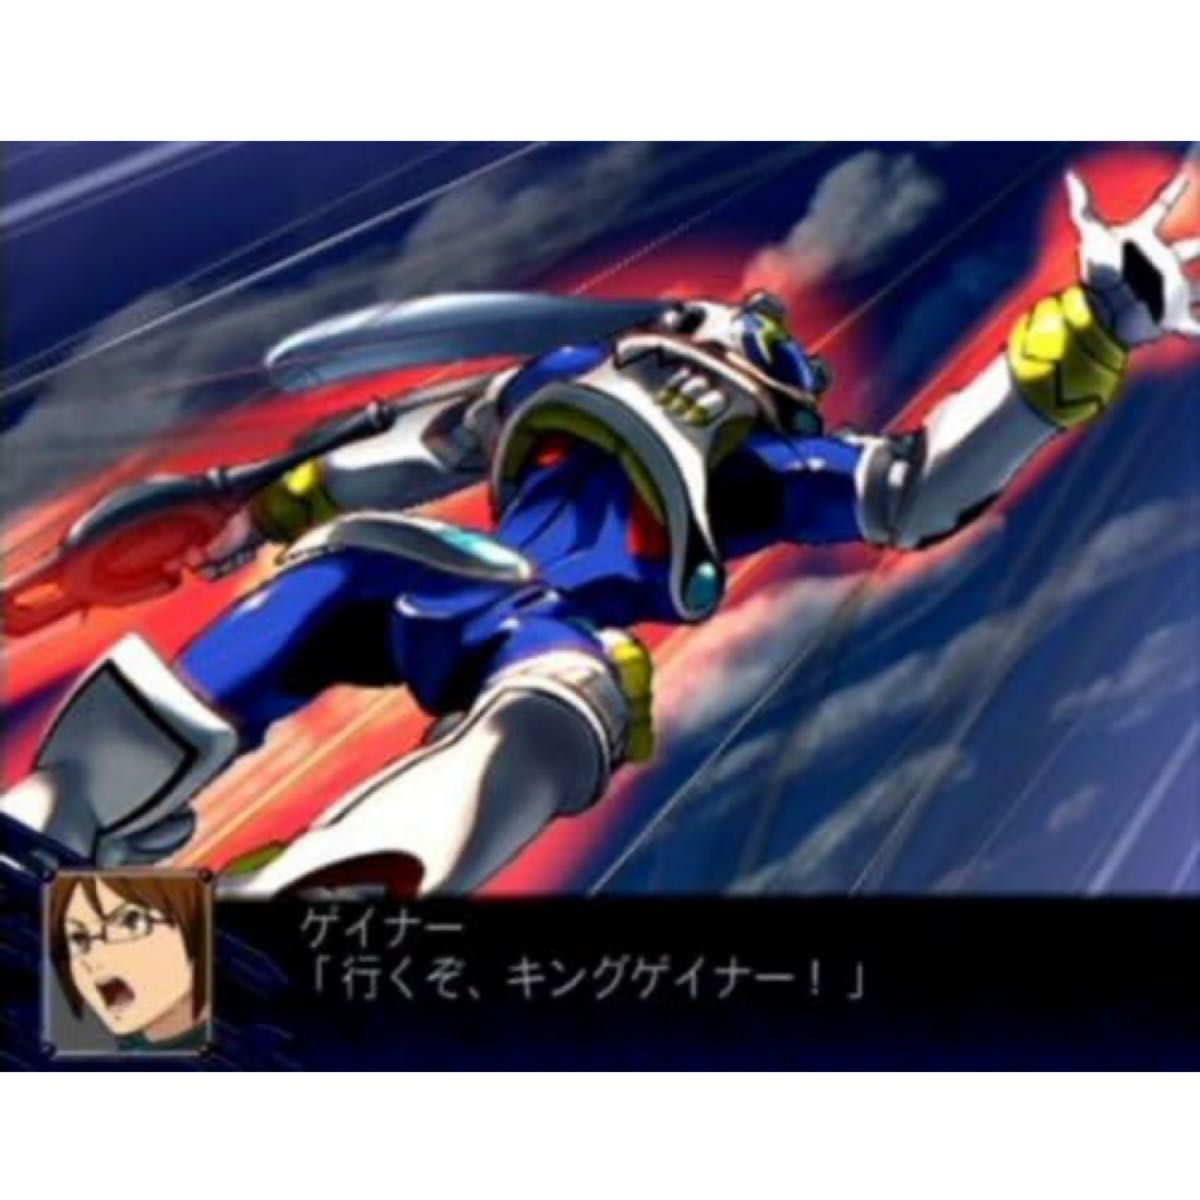 【PS2】 新品未開封スーパーロボット大戦 Z スペシャルディスク